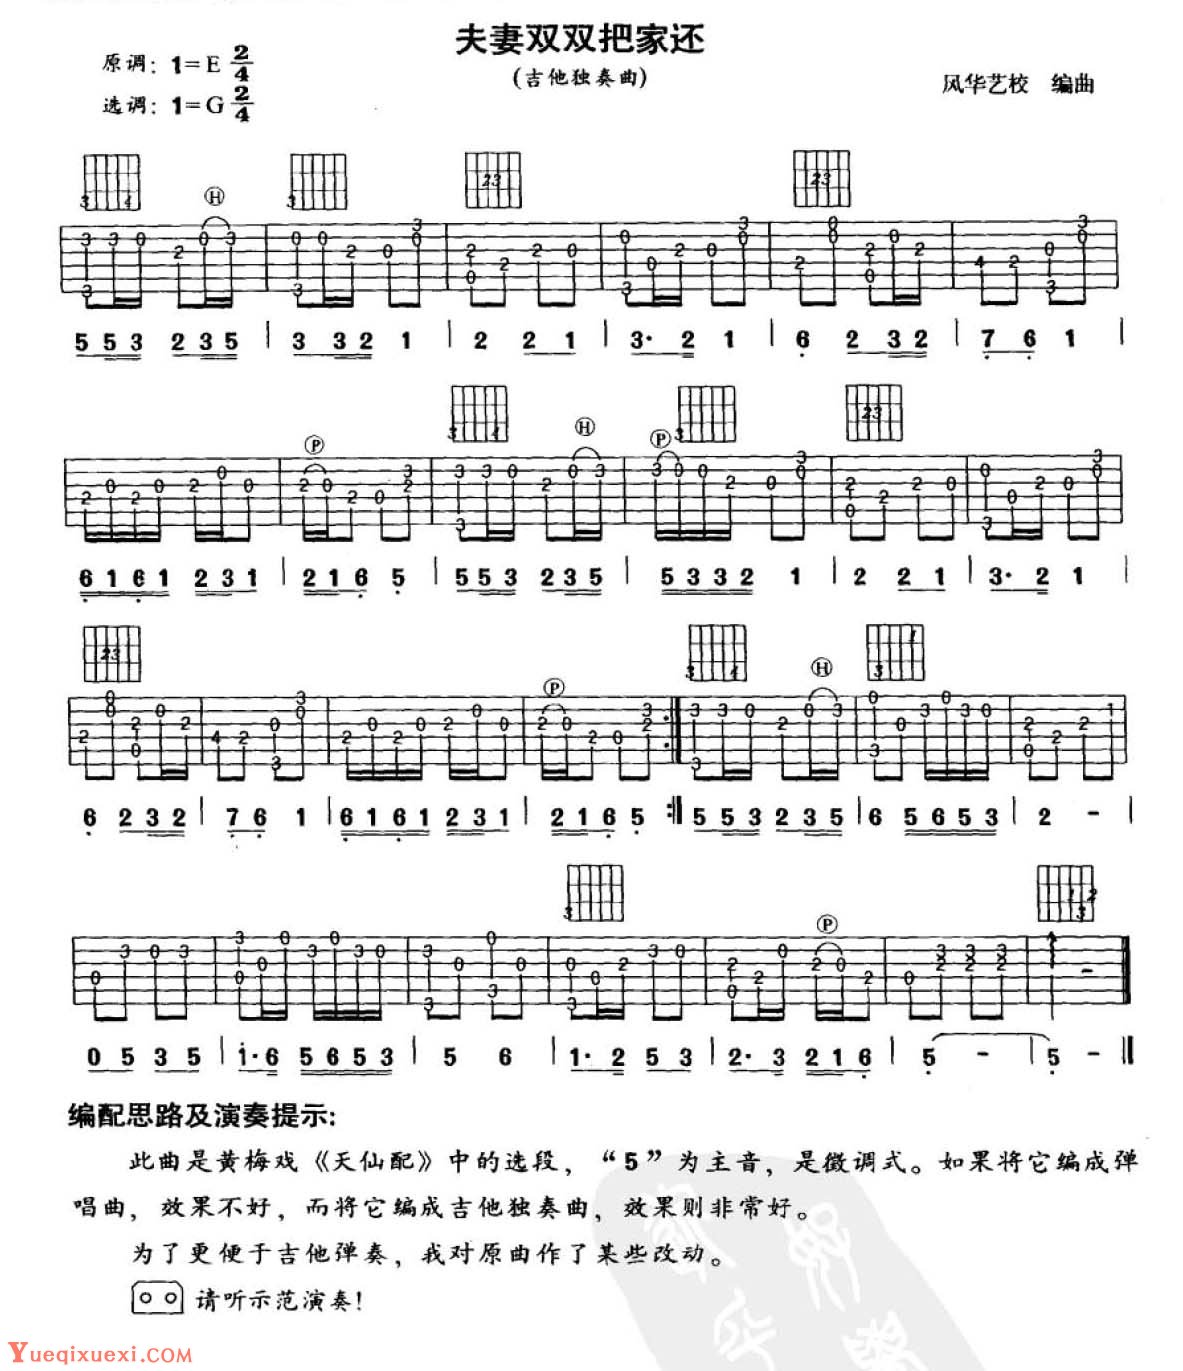 吉他中级练习曲《夫妻双双把家还》中国乐曲